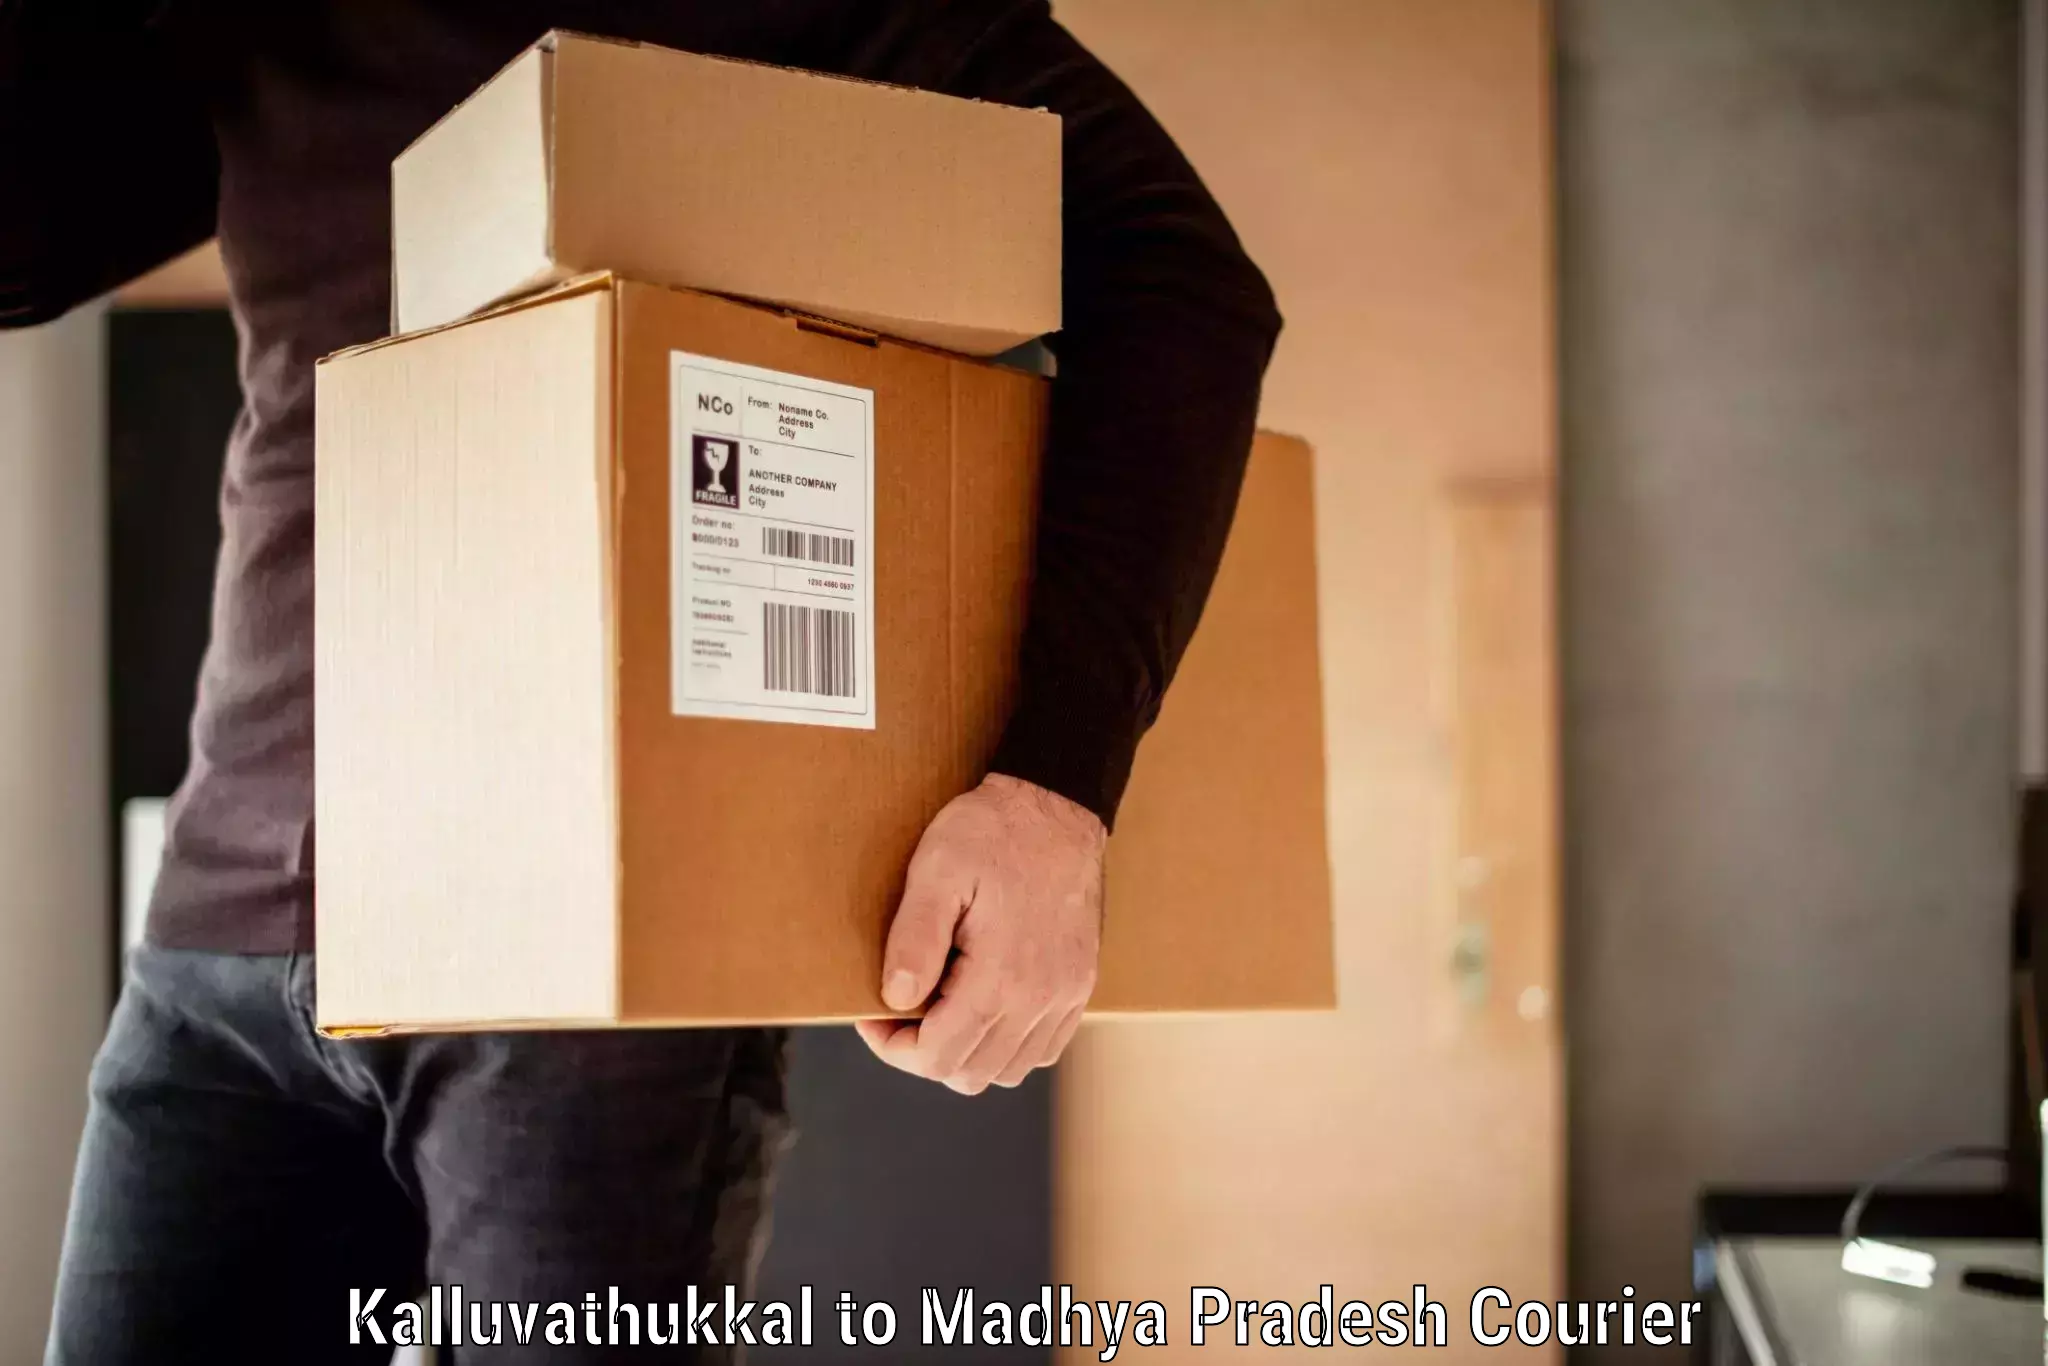 Luggage delivery providers Kalluvathukkal to Amarkantak